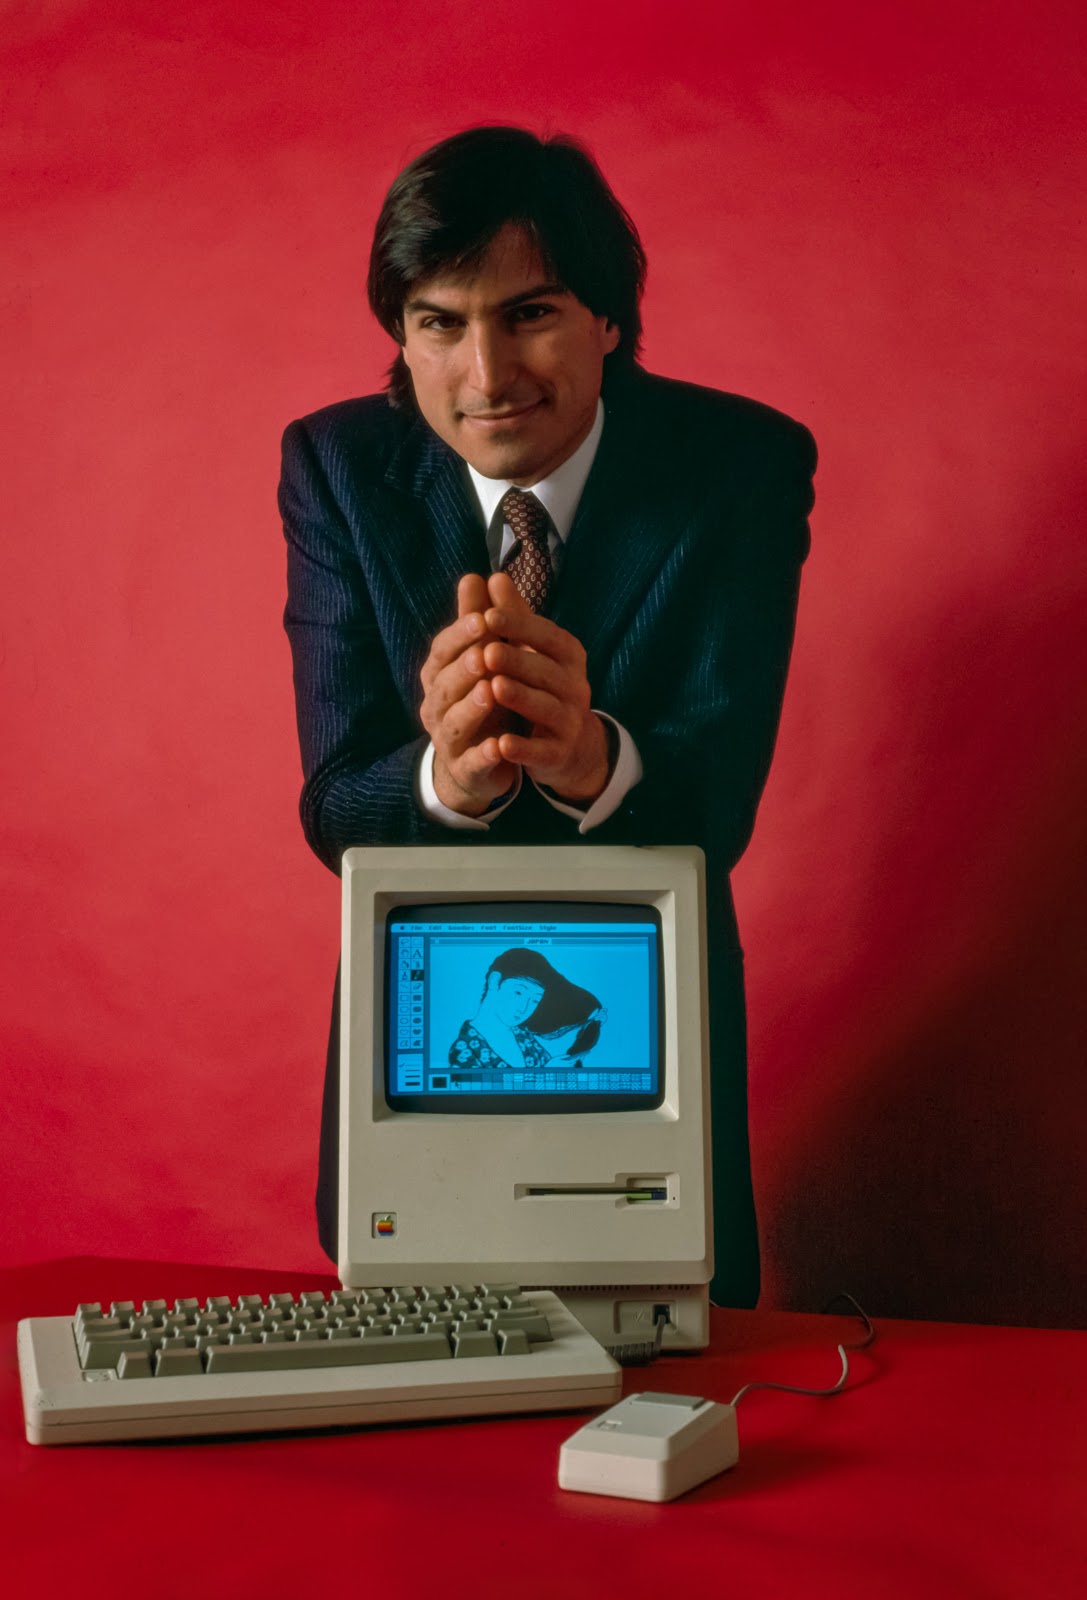 Macintoshの筐体の上に両肘を付いて微笑むスティーブ・ジョブズ